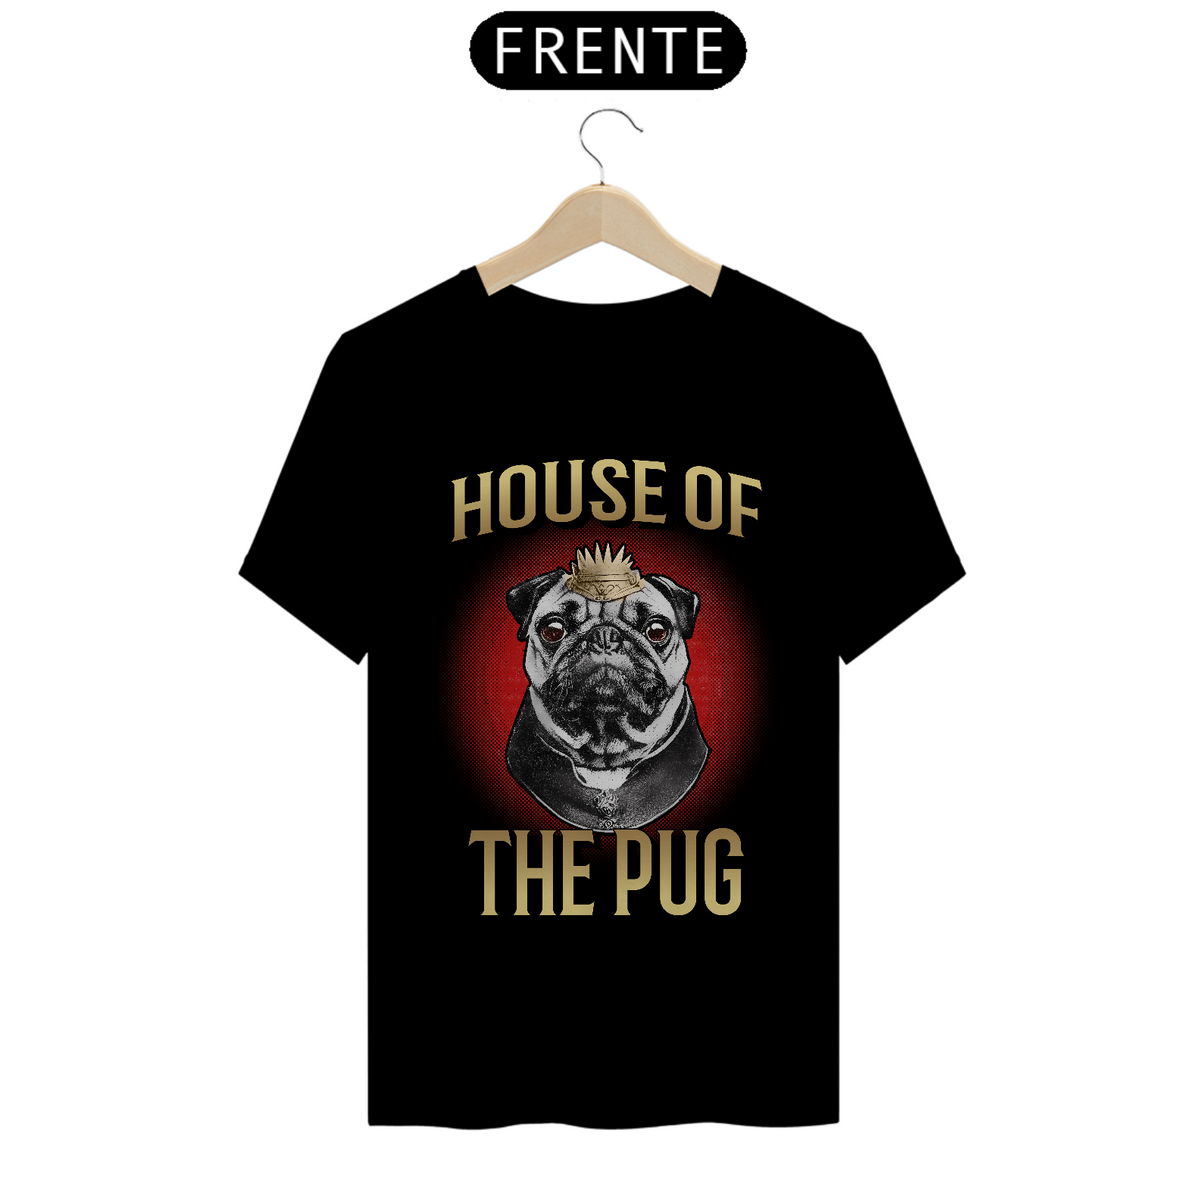 Nome do produto: Camiseta - House of the pug